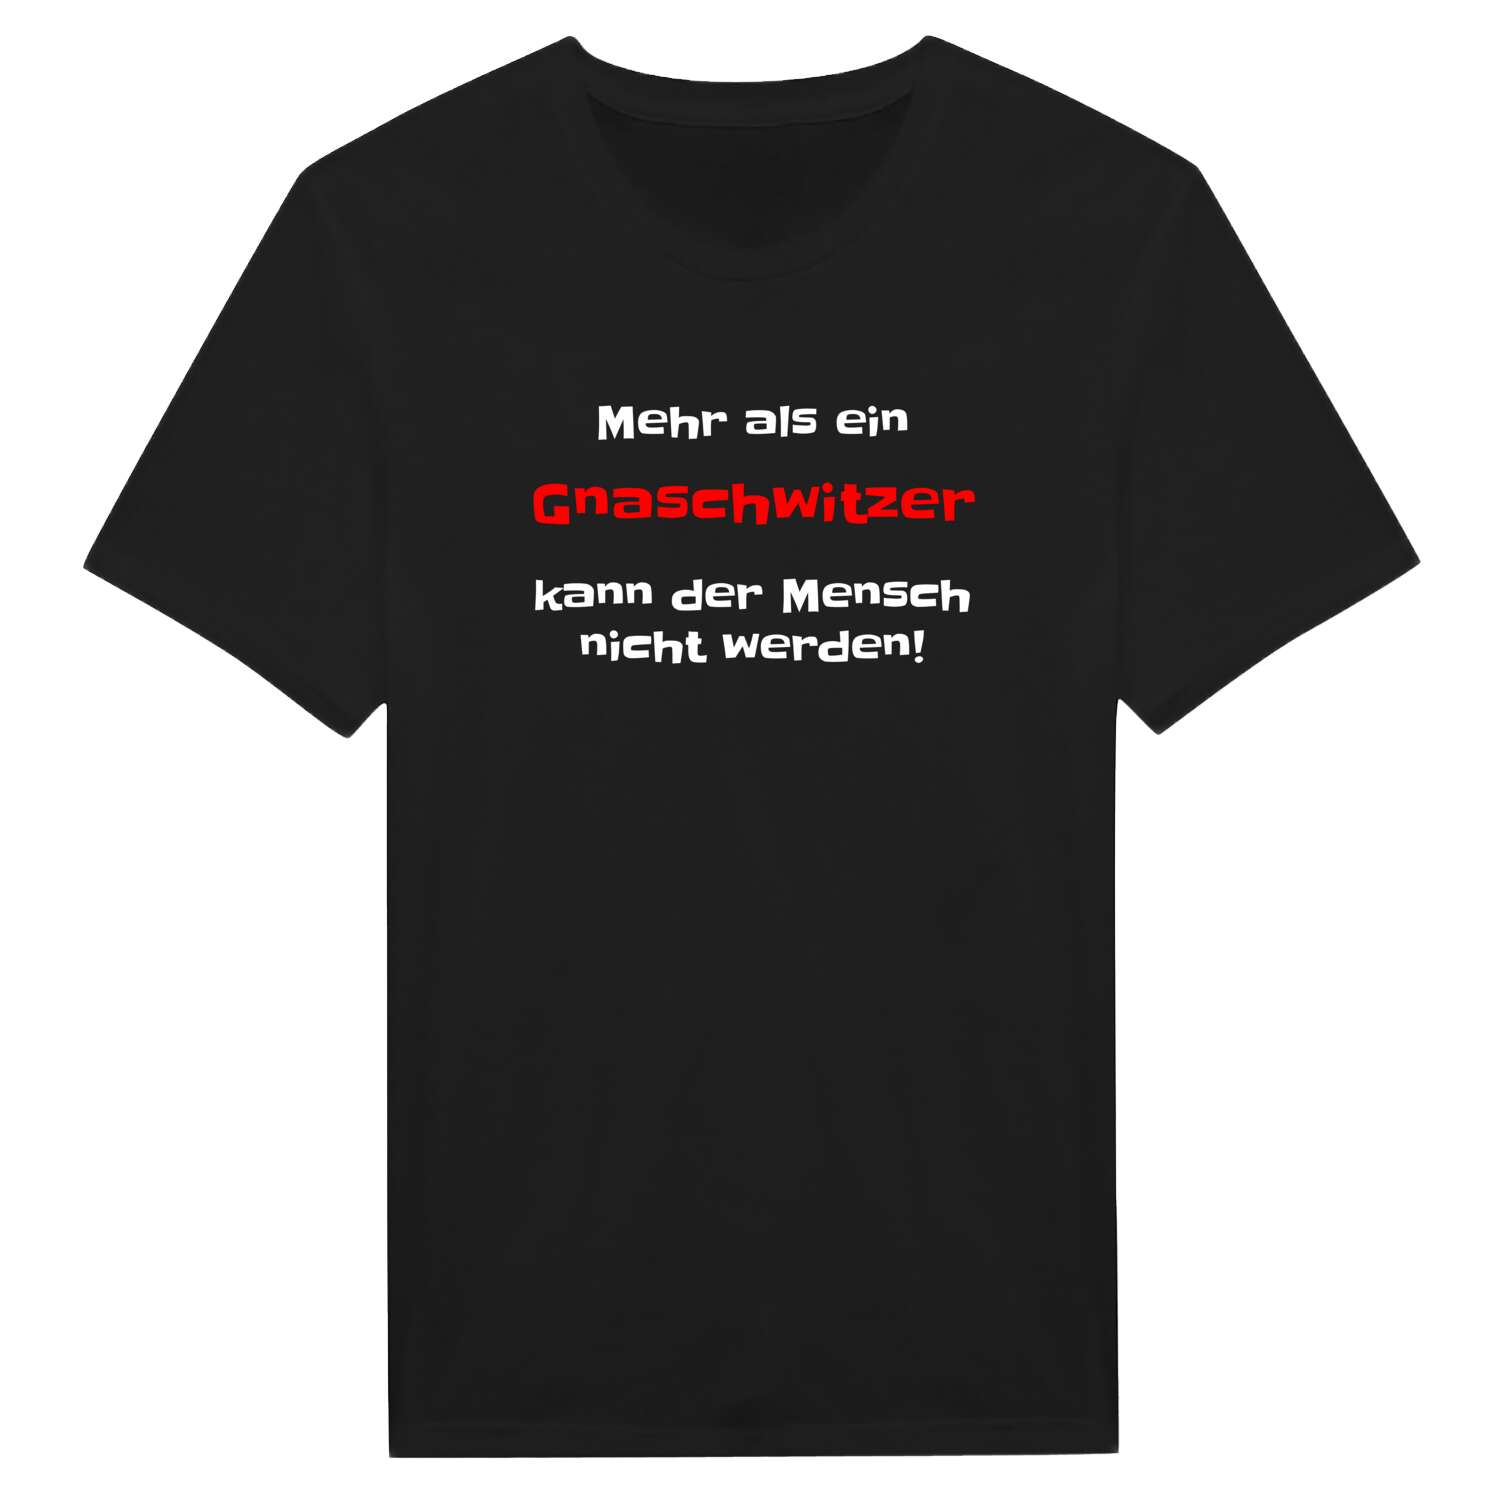 Gnaschwitz T-Shirt »Mehr als ein«